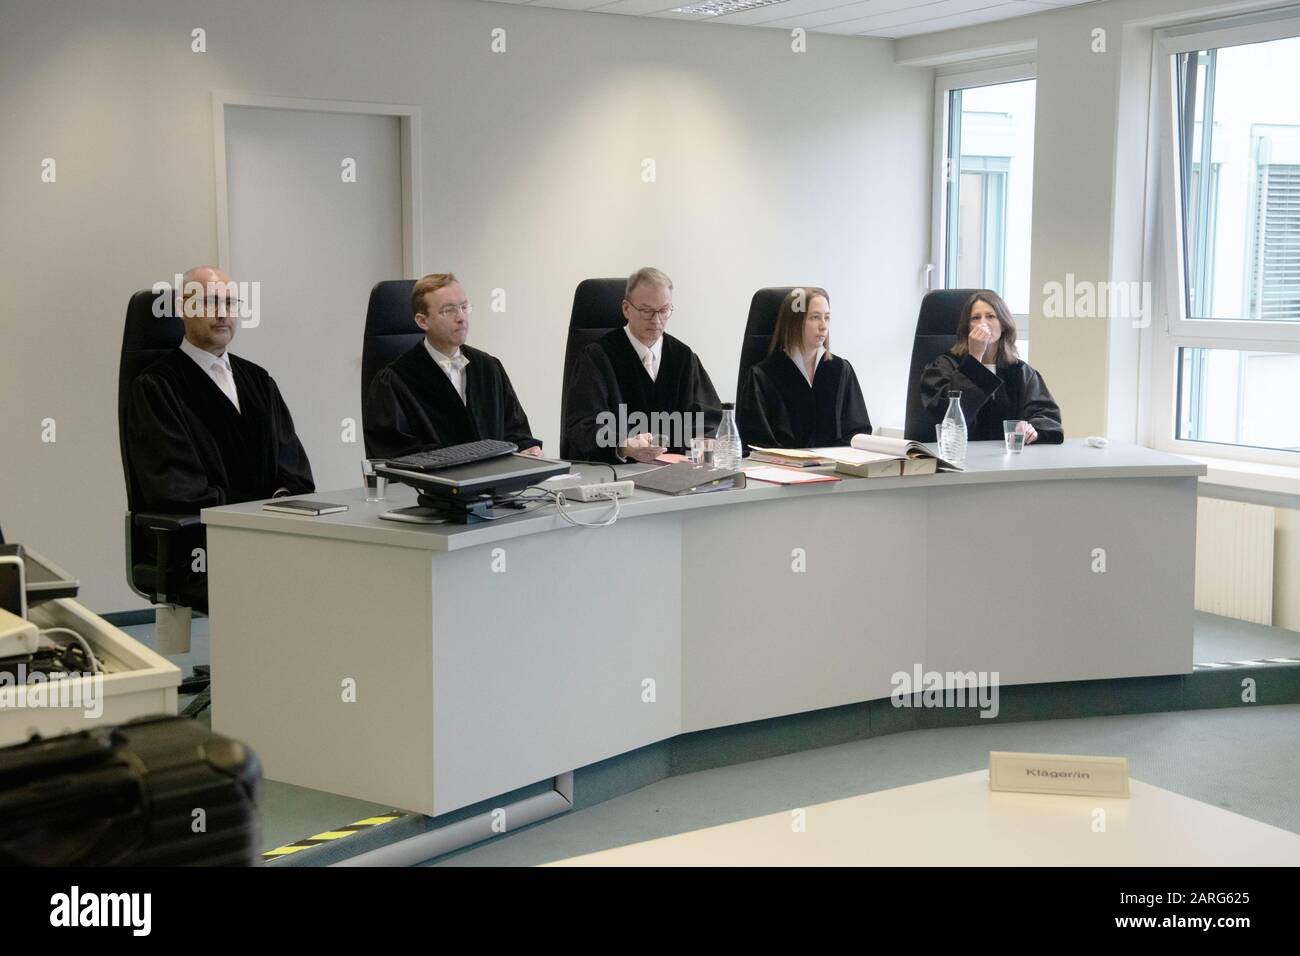 Berlin, Allemagne. 28 janvier 2020. Les juges siègent dans une salle du Tribunal administratif de Berlin. Là, ils ont négocié une interdiction d'utiliser une auberge dans les locaux de l'ambassade de Corée du Nord. Crédit: Paul Zinken/dpa/ZB/dpa/Alay Live News Banque D'Images